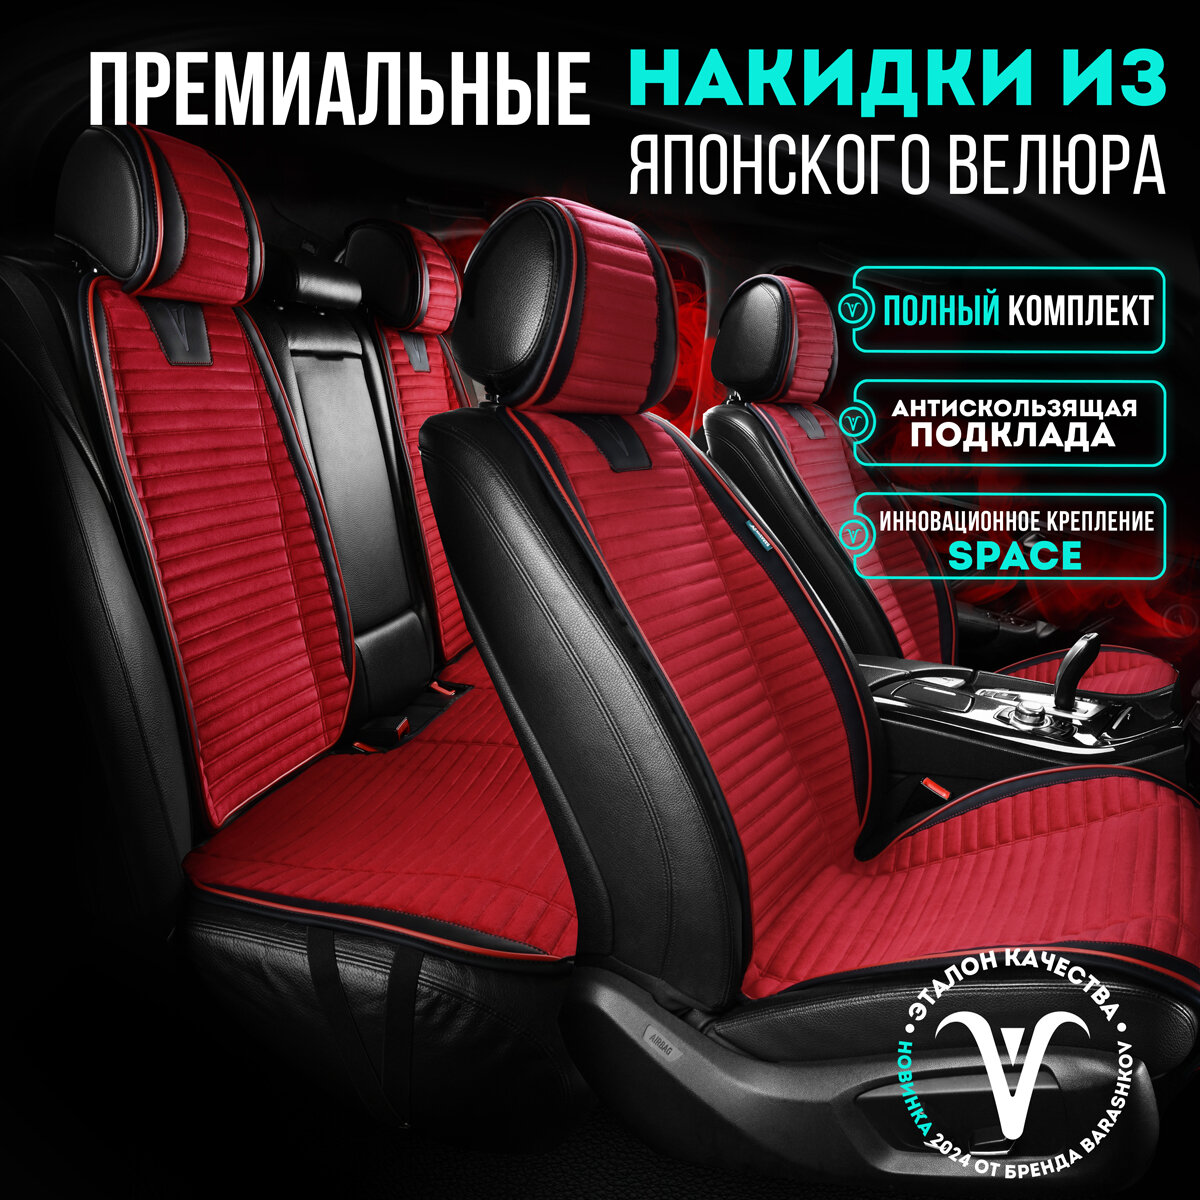 Комплект накидок на передние и задние сиденья из велюра , Модель PREMIUM. Красный, черный, красный